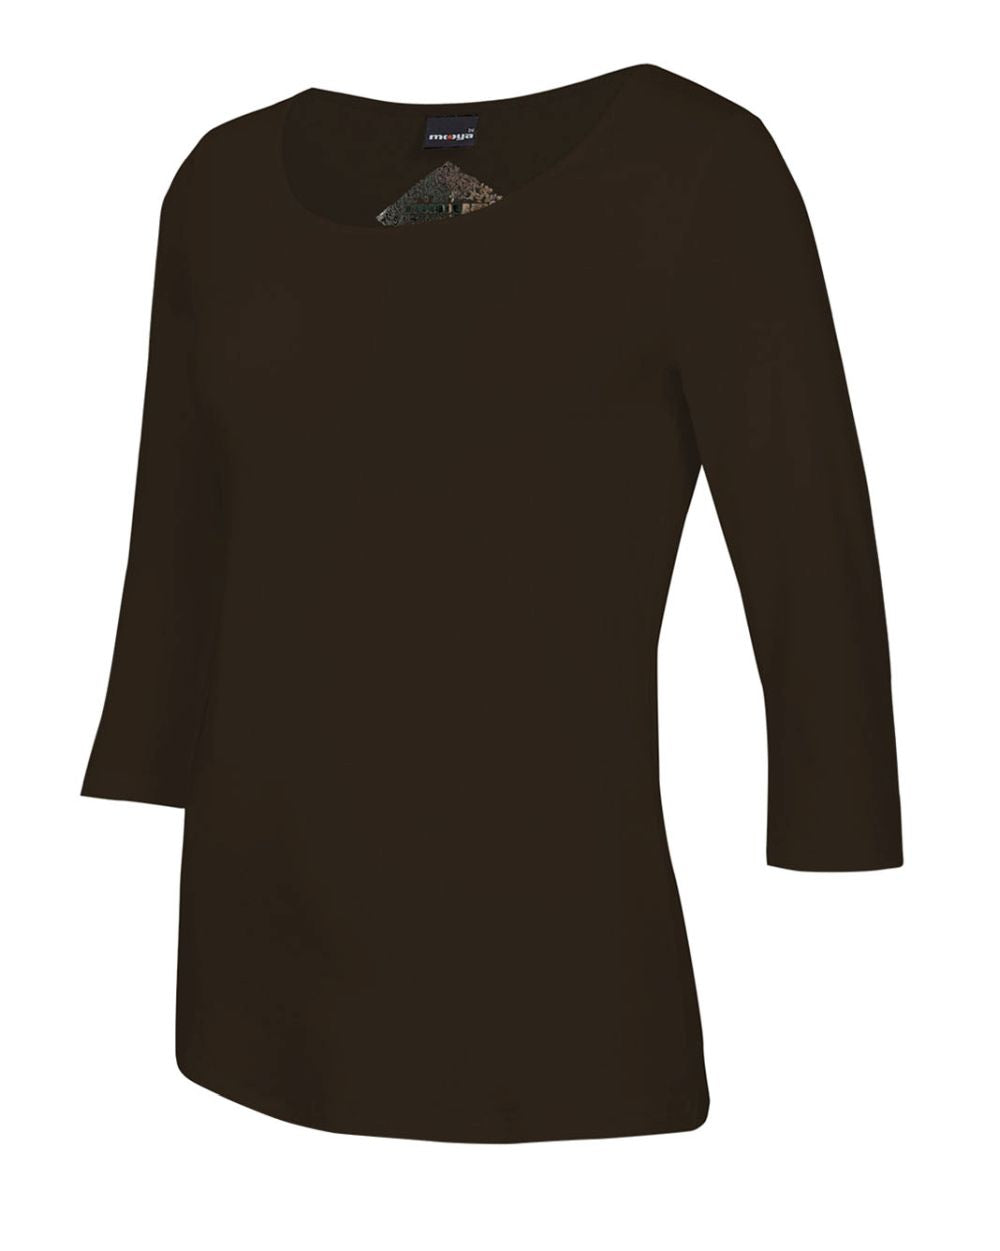 Damen-Shirt Angela, 3/4-Arm, Rundhalsausschnitt, Farbe Mocca